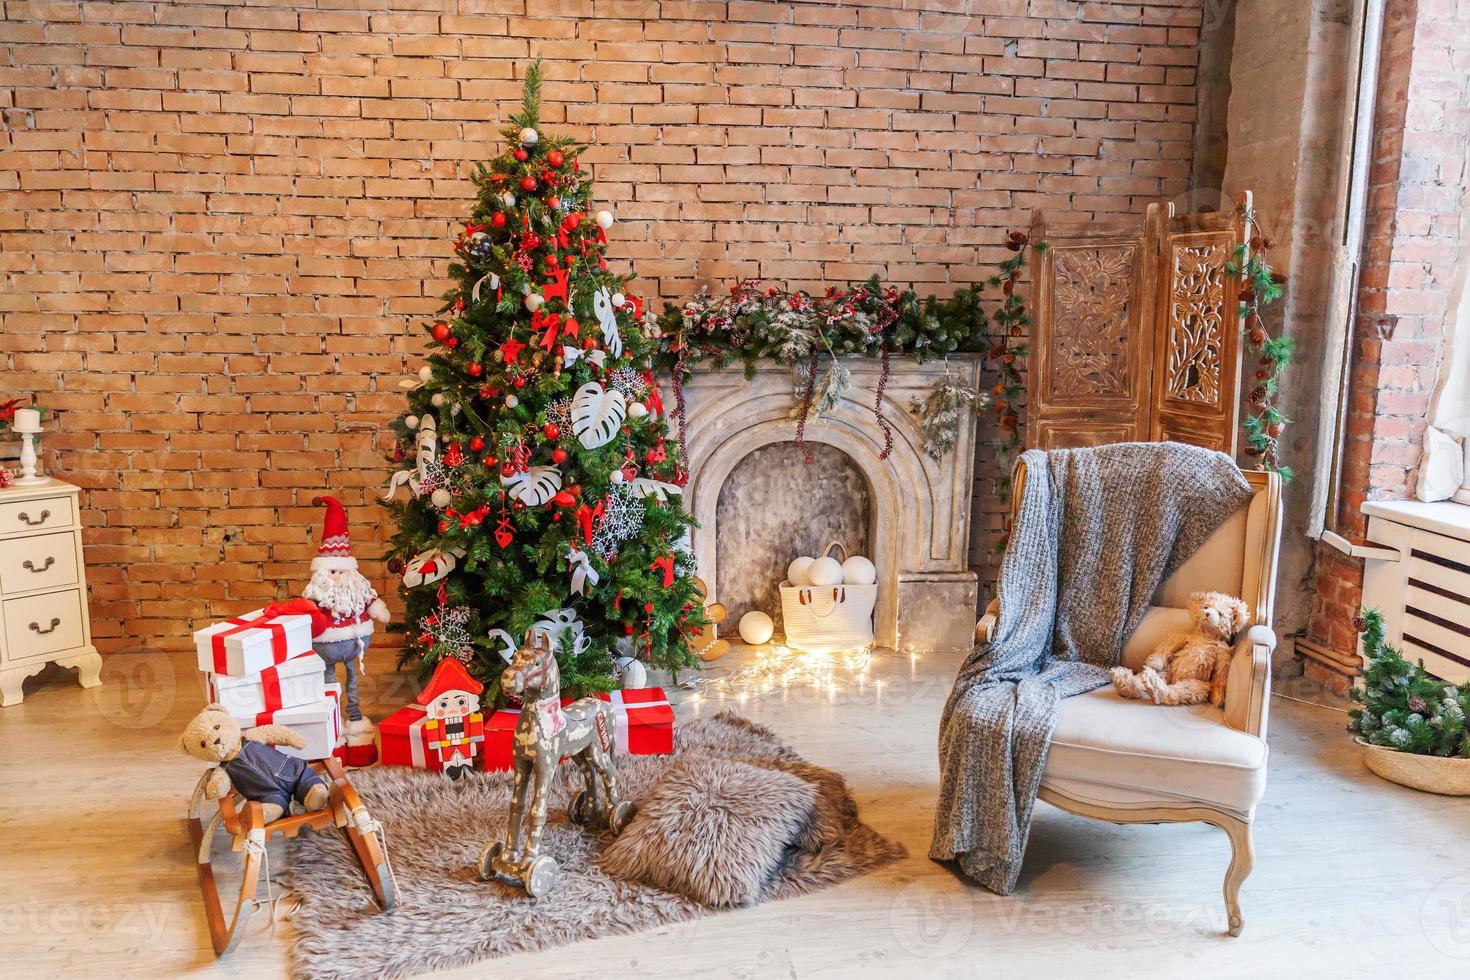 klassisk jul ny år dekorerad interiör rum ny år träd och öppen spis foto